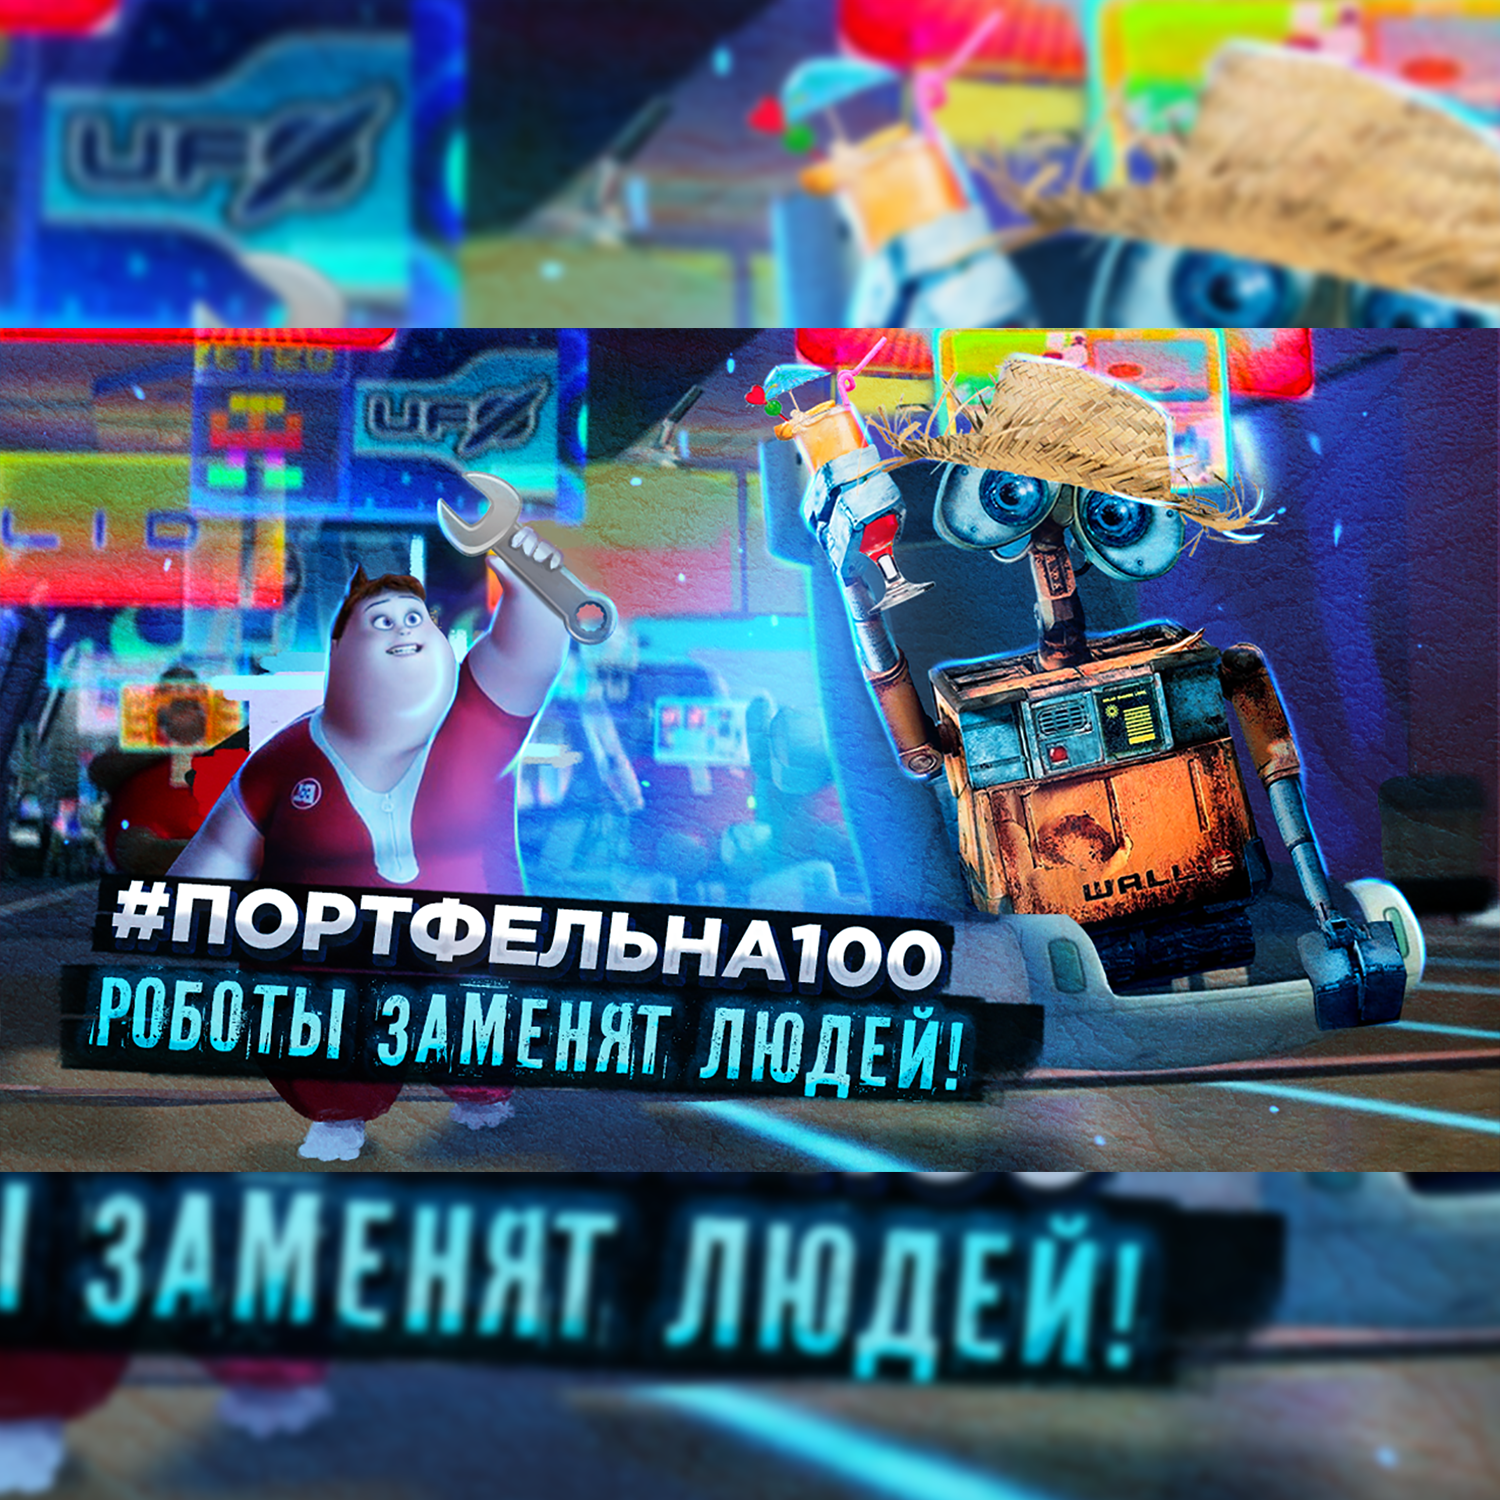 Роботы заменят людей #Портфельна100 podcast poster